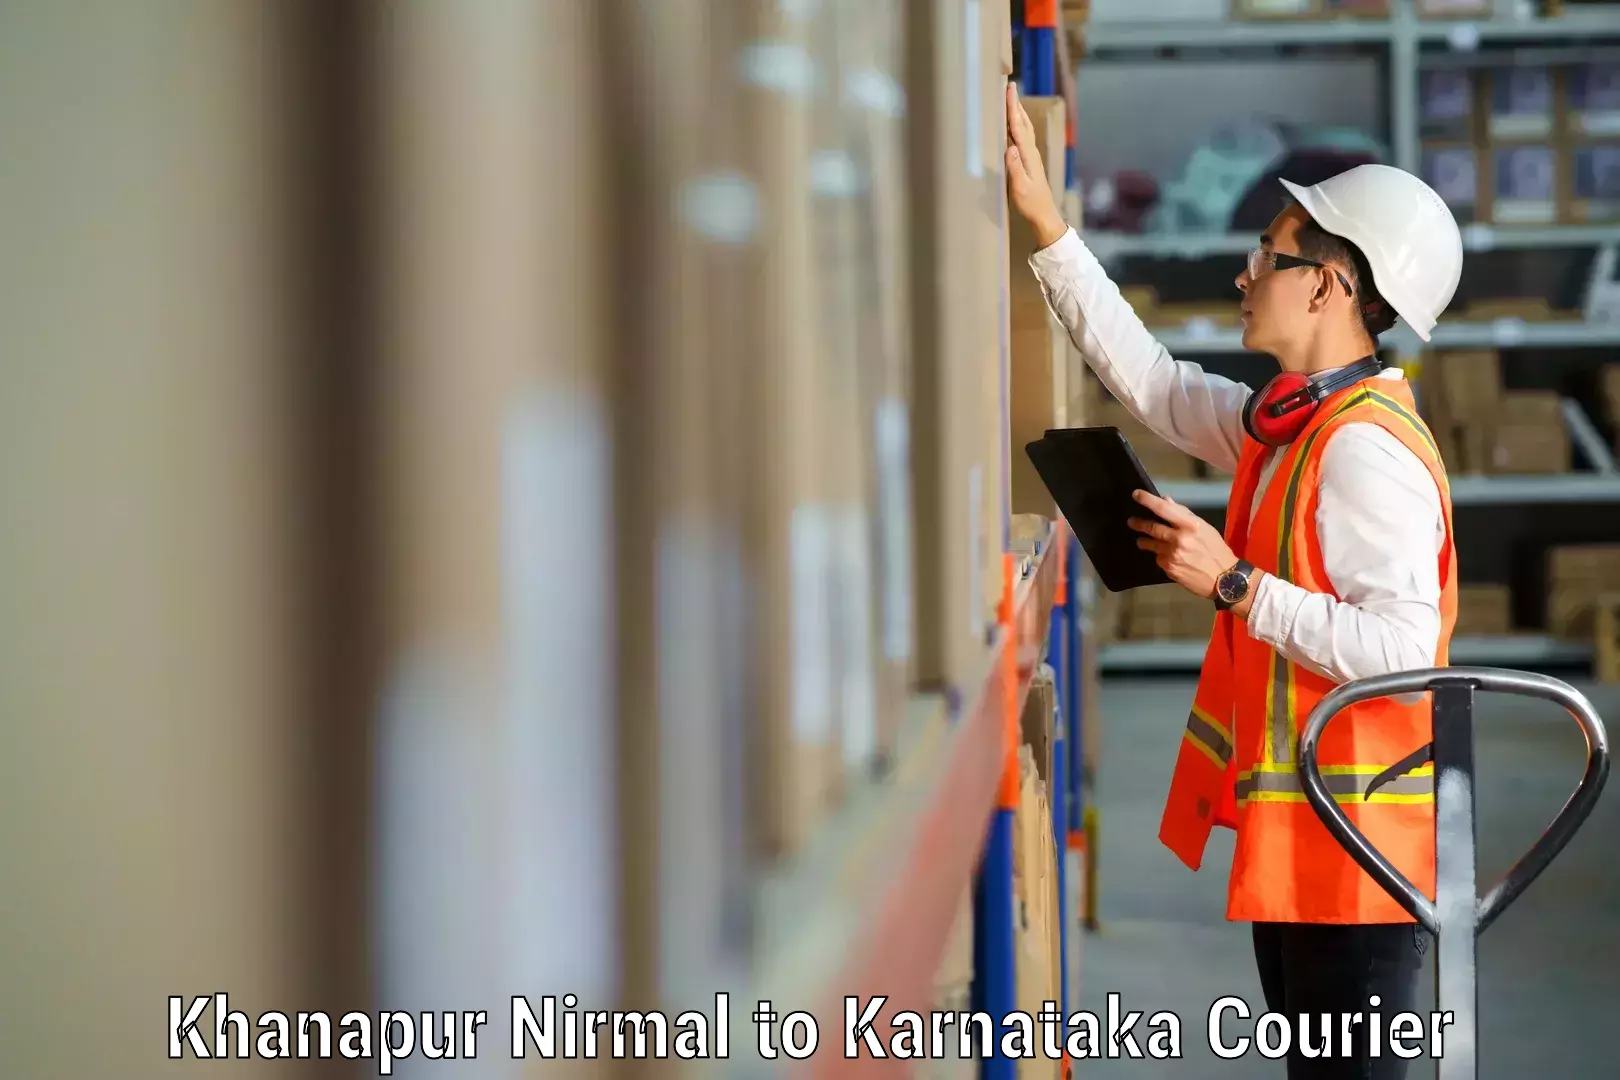 Reliable moving solutions Khanapur Nirmal to Devanahalli